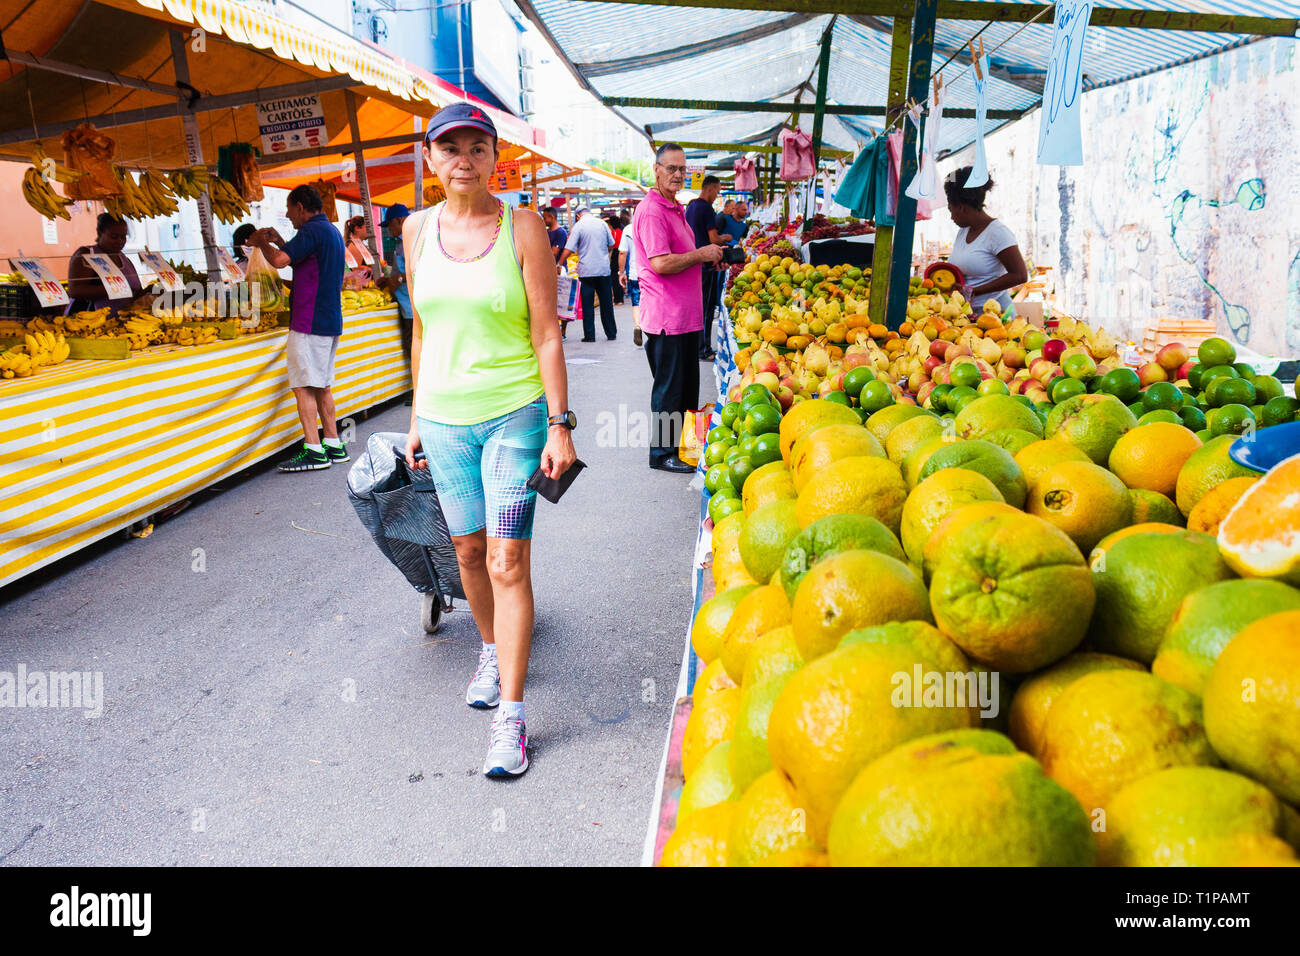 Taboão da Serra, SP / Brasile - 03/17/2019: Un gruppo non identificato di persone in commercio, la vendita di ortaggi e frutta e cibo in fiera. Foto Stock